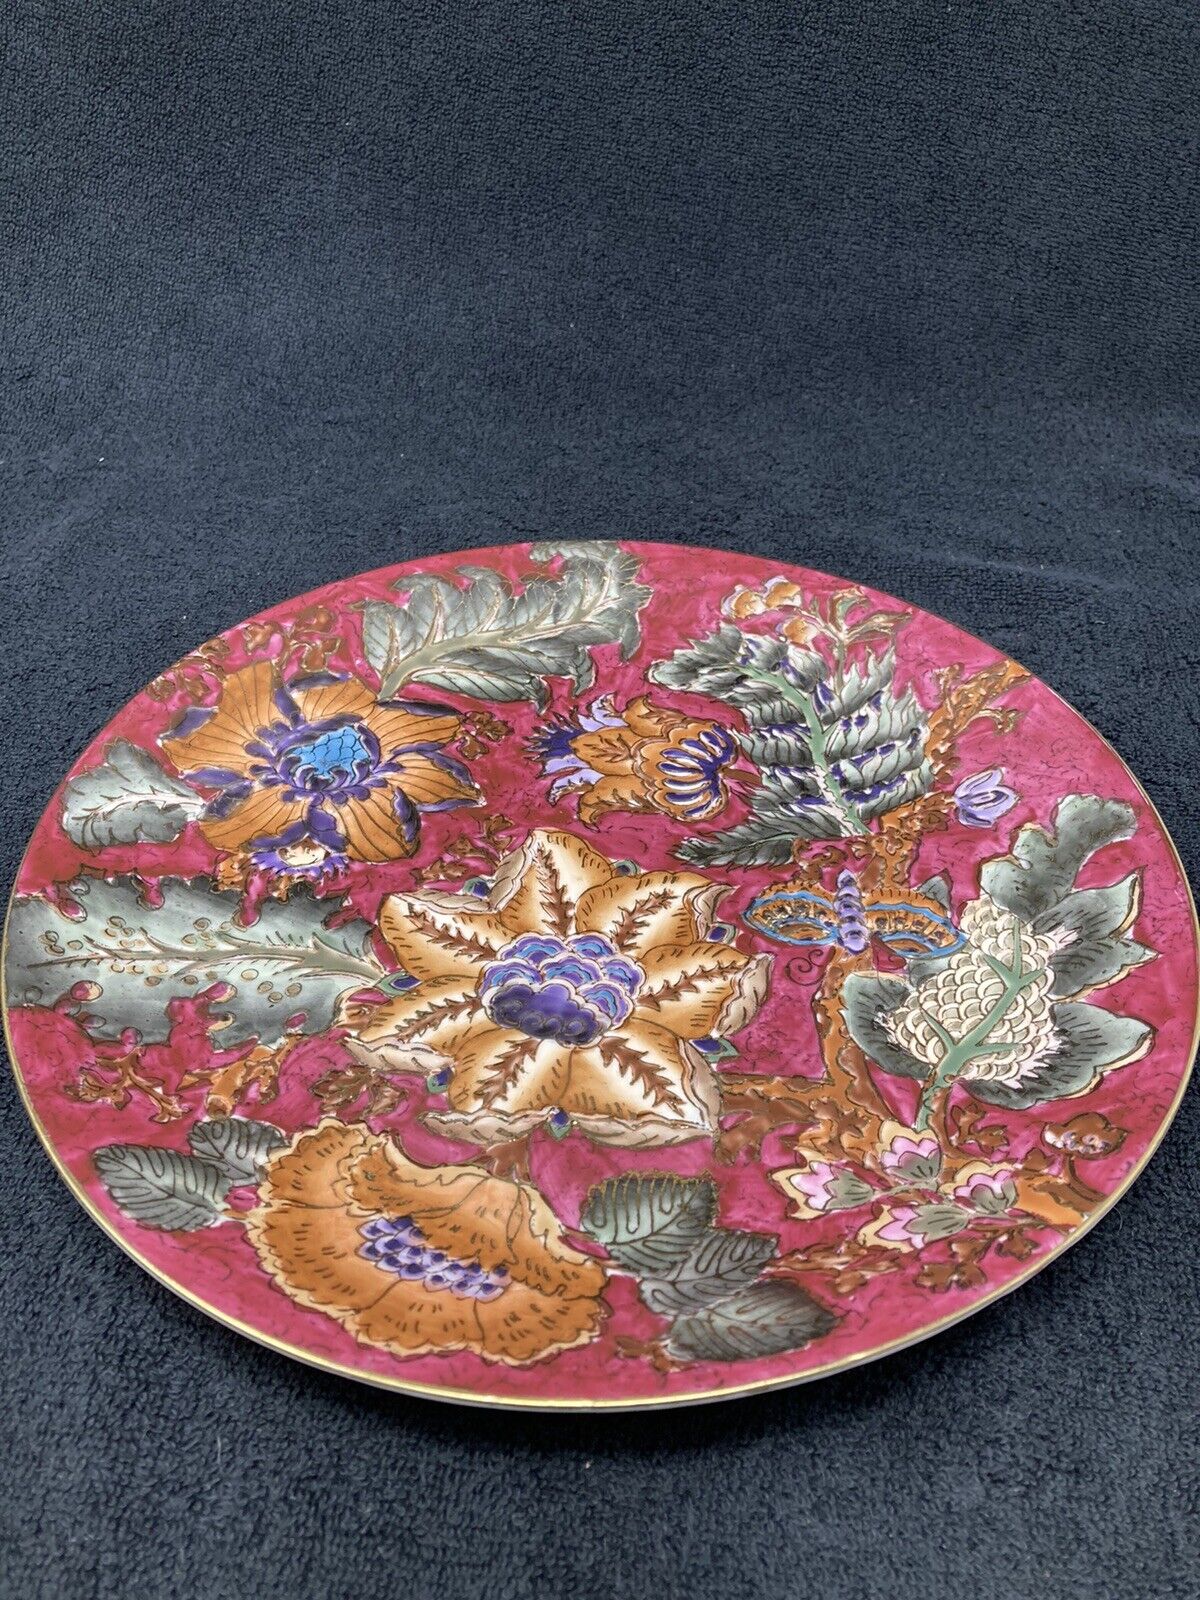 Beautiful decorative oriental plate